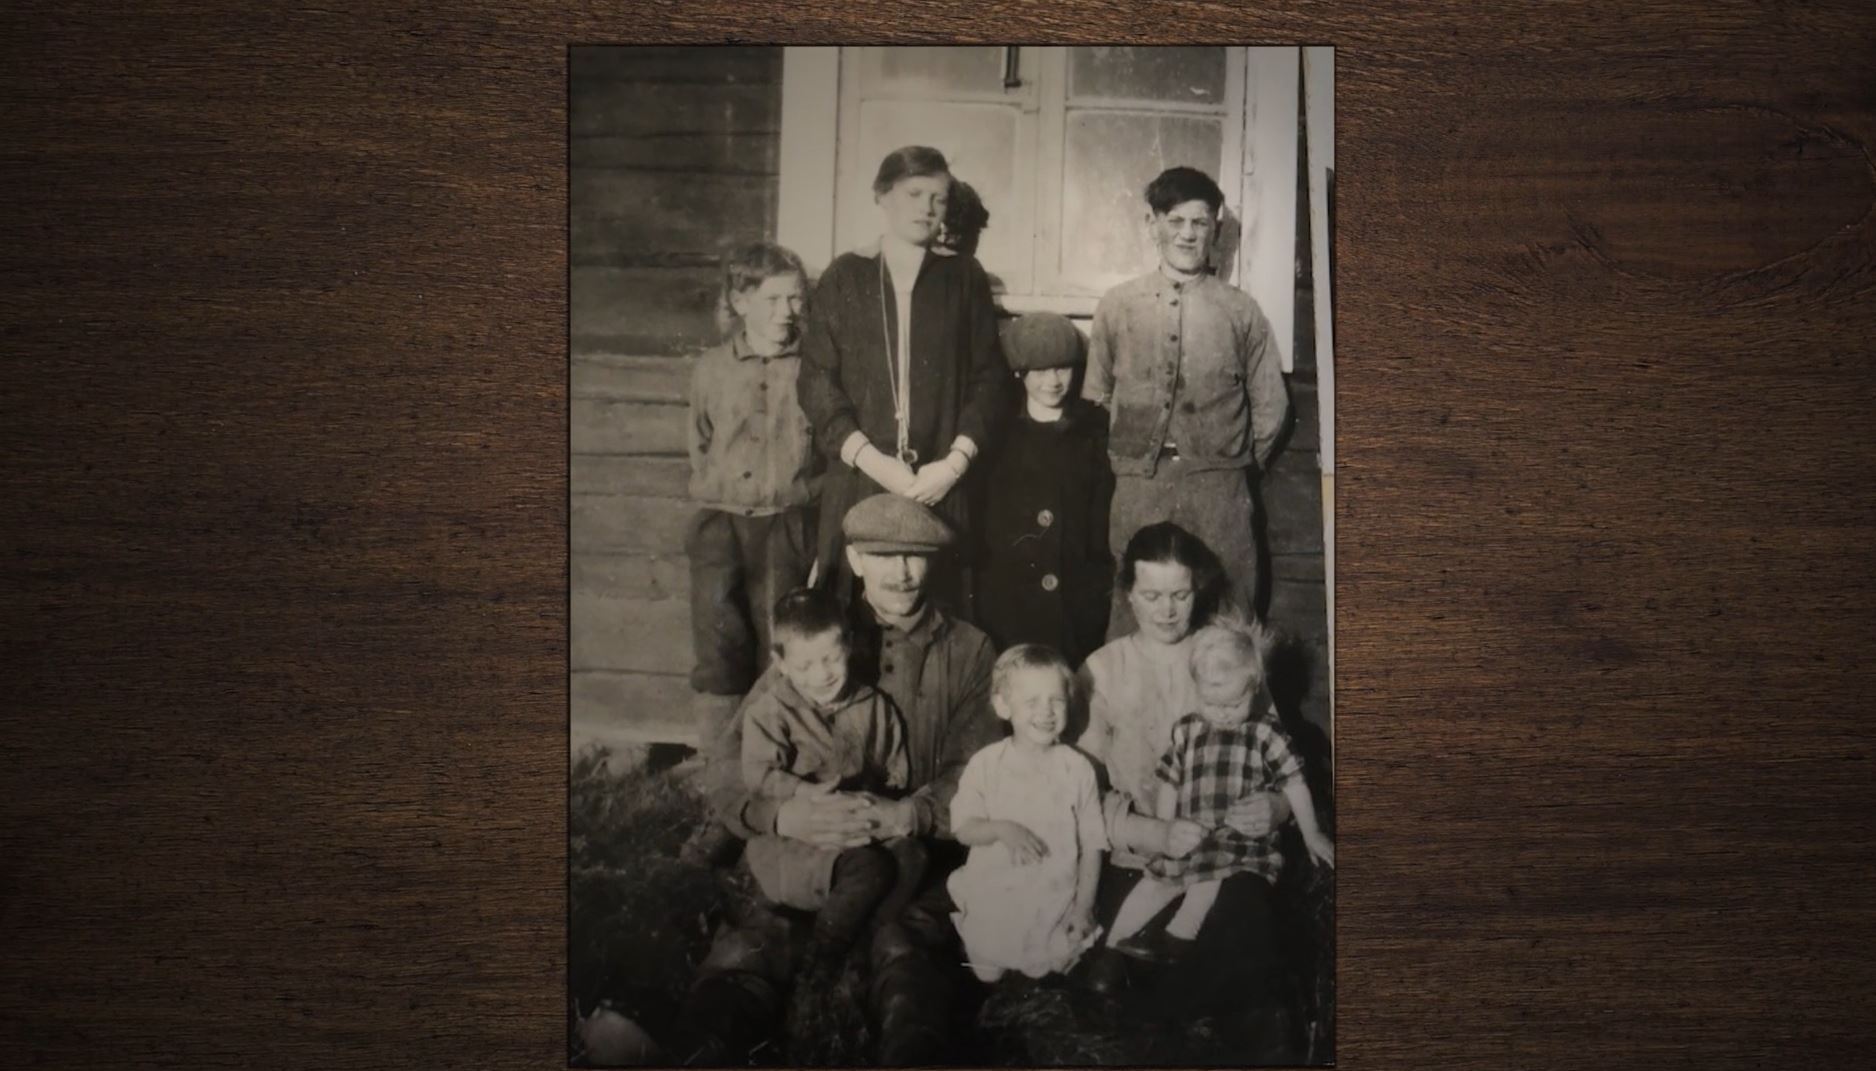 Svartvitt äldre foto av en grupp på åtta stycken människor i olika åldrar framför ett hus. Eventuellt är det ett familjefoto.